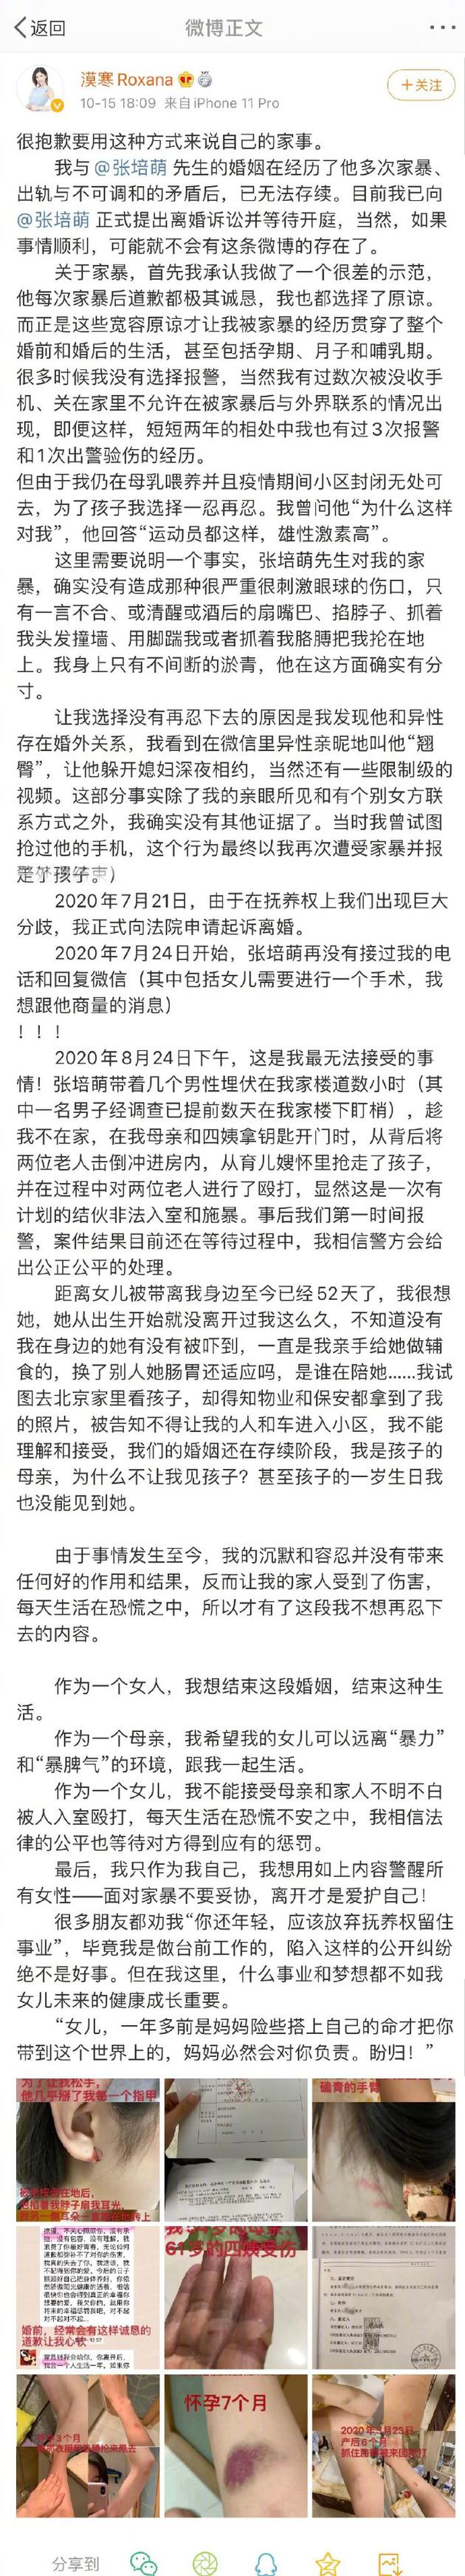 张培萌妻子谈家暴细节:他每次道歉我都选择了原谅